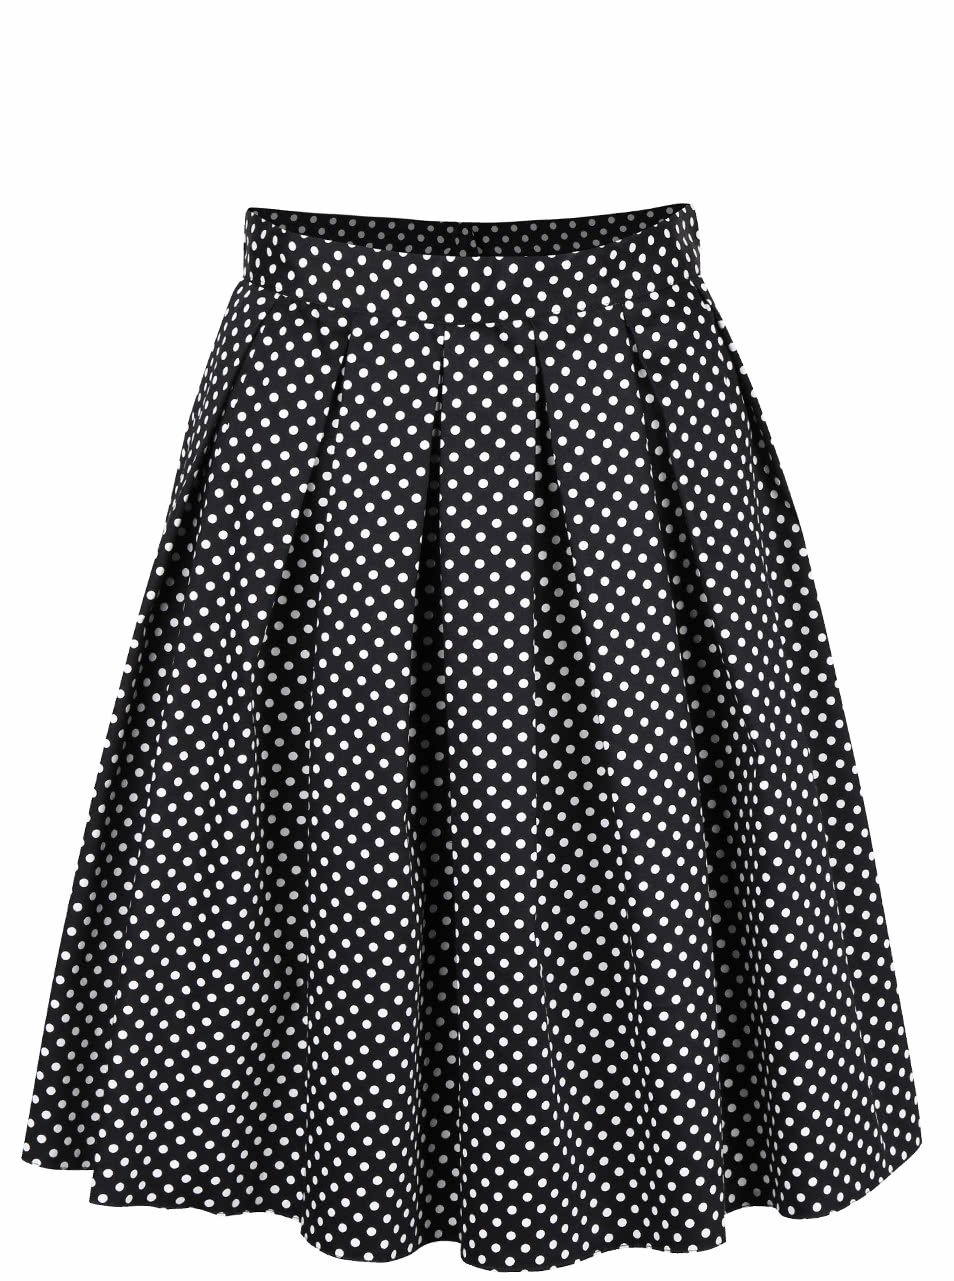 Černá skládaná sukně s bílými puntíky Dorothy Perkins